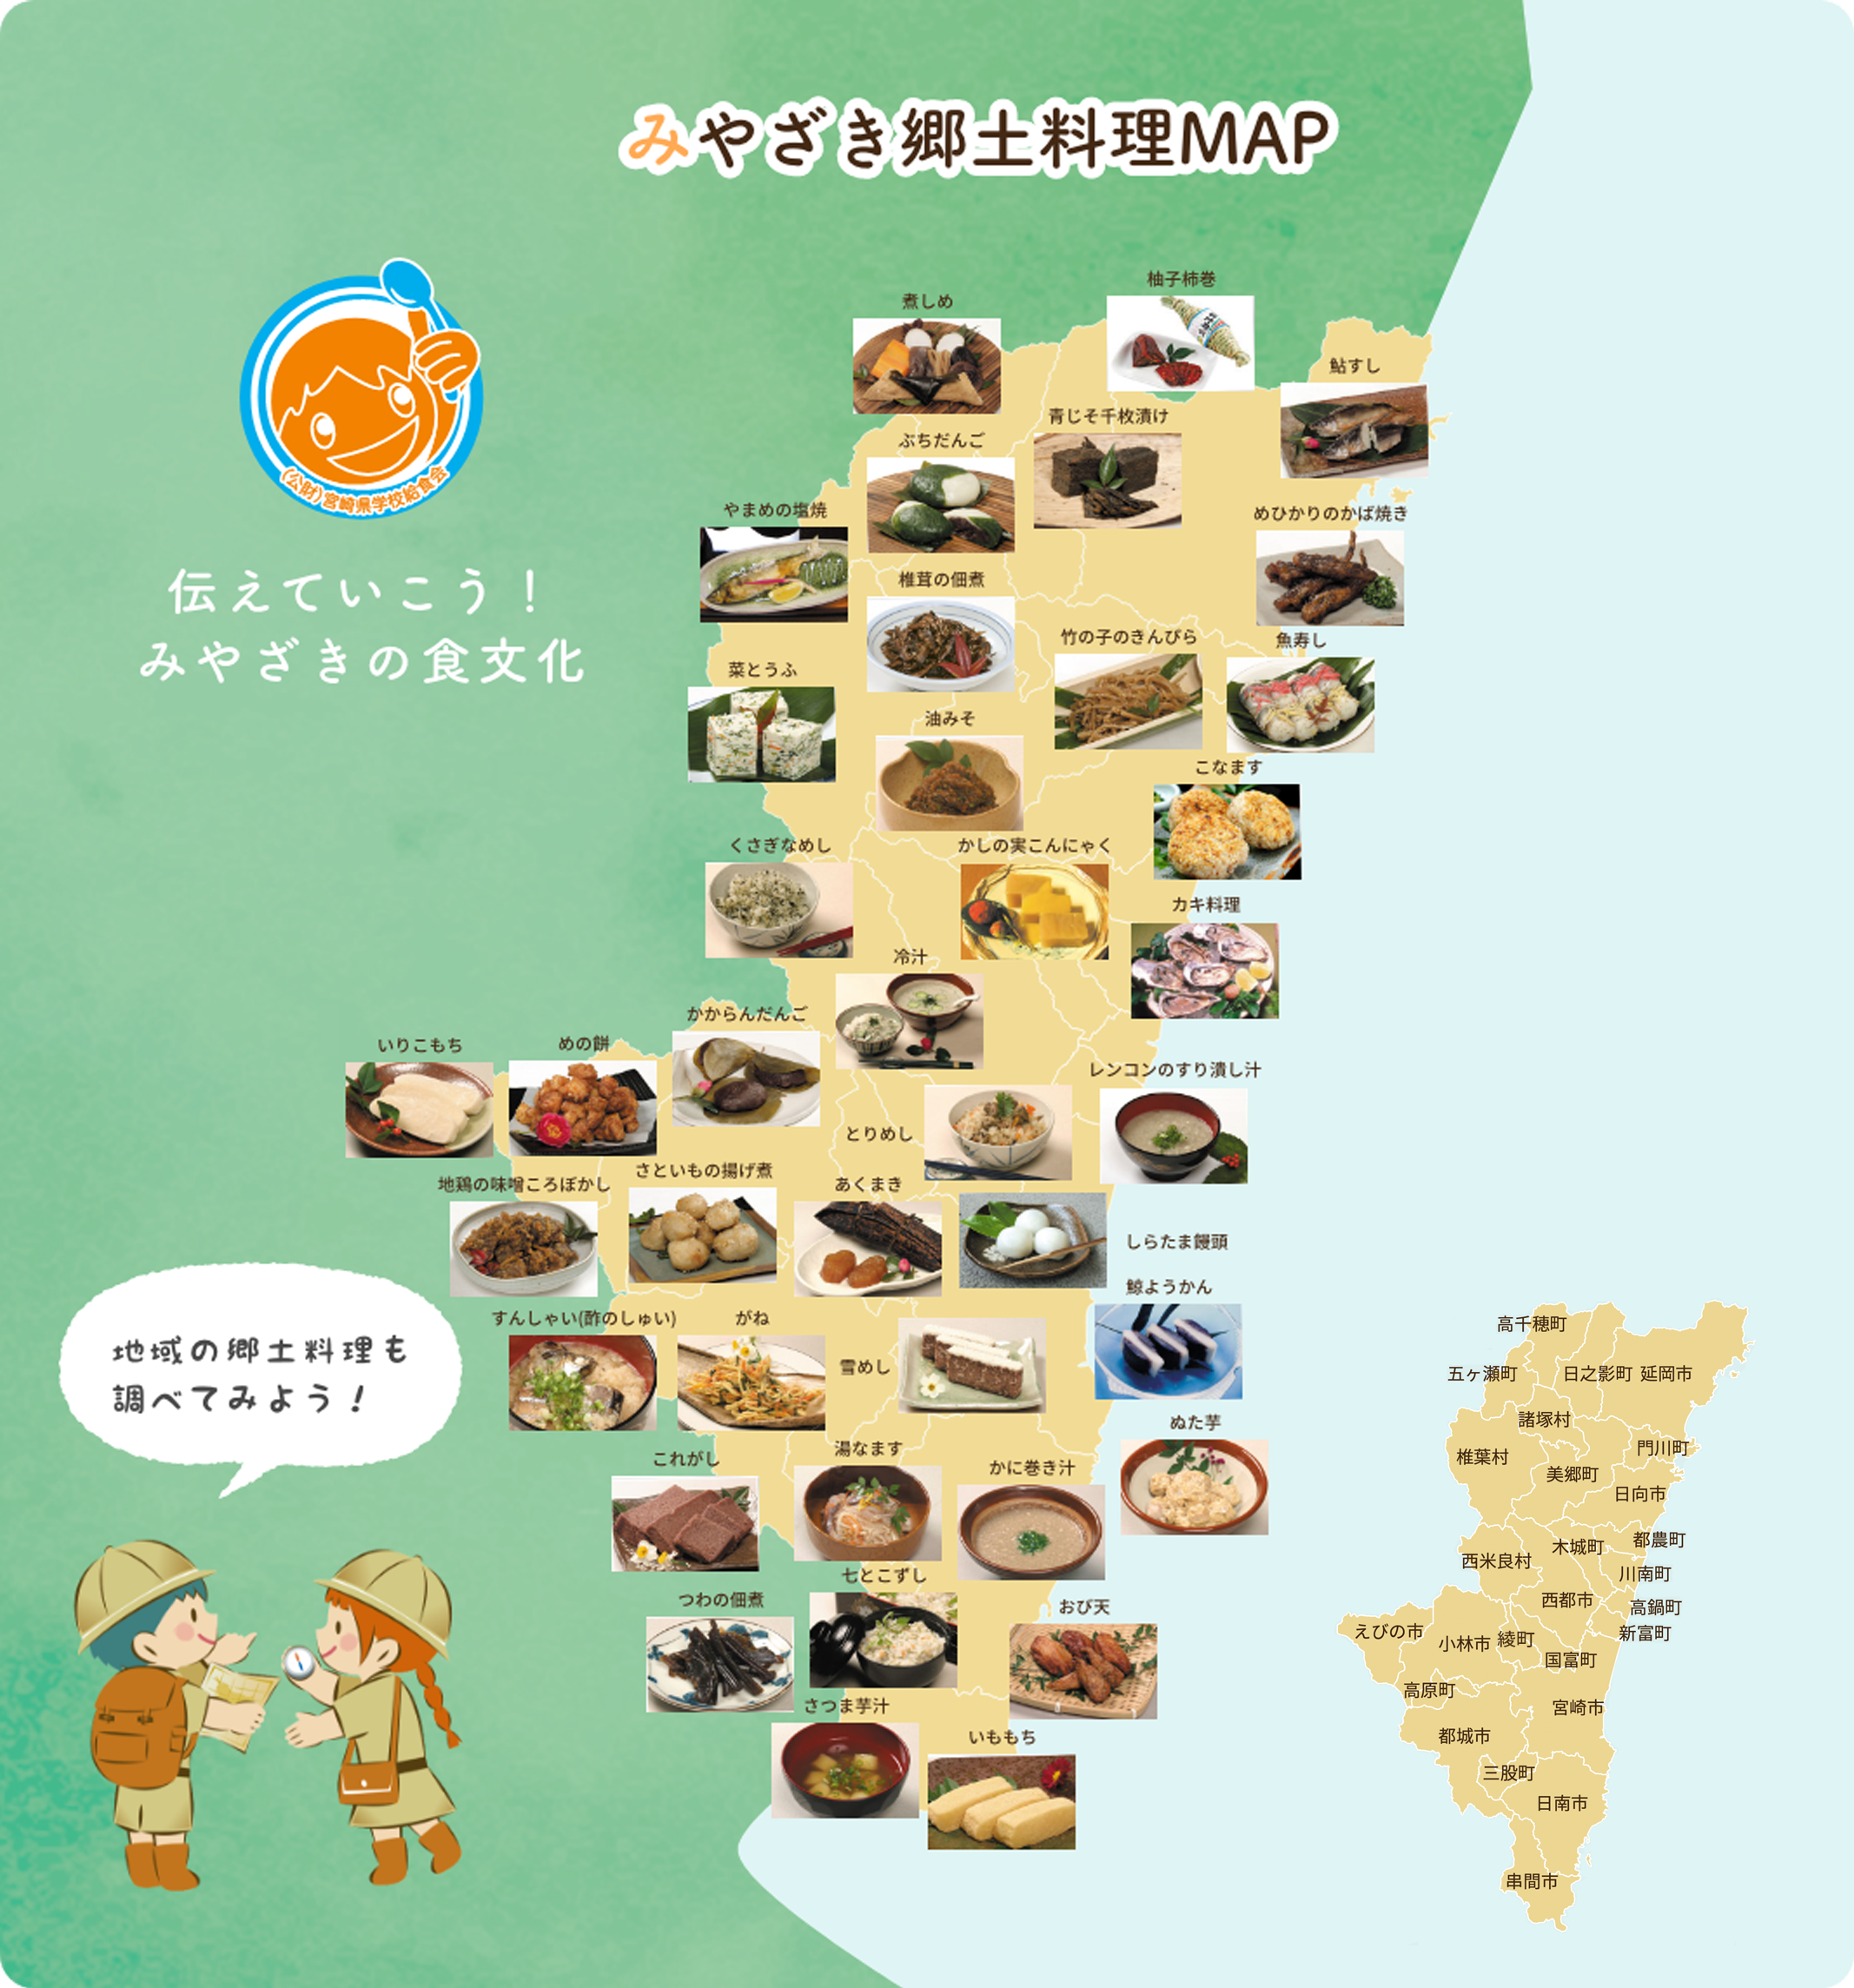 みやざき郷土料理MAP 伝えていこう！みやざきの食文化 地域の郷土料理も調べてみよう！